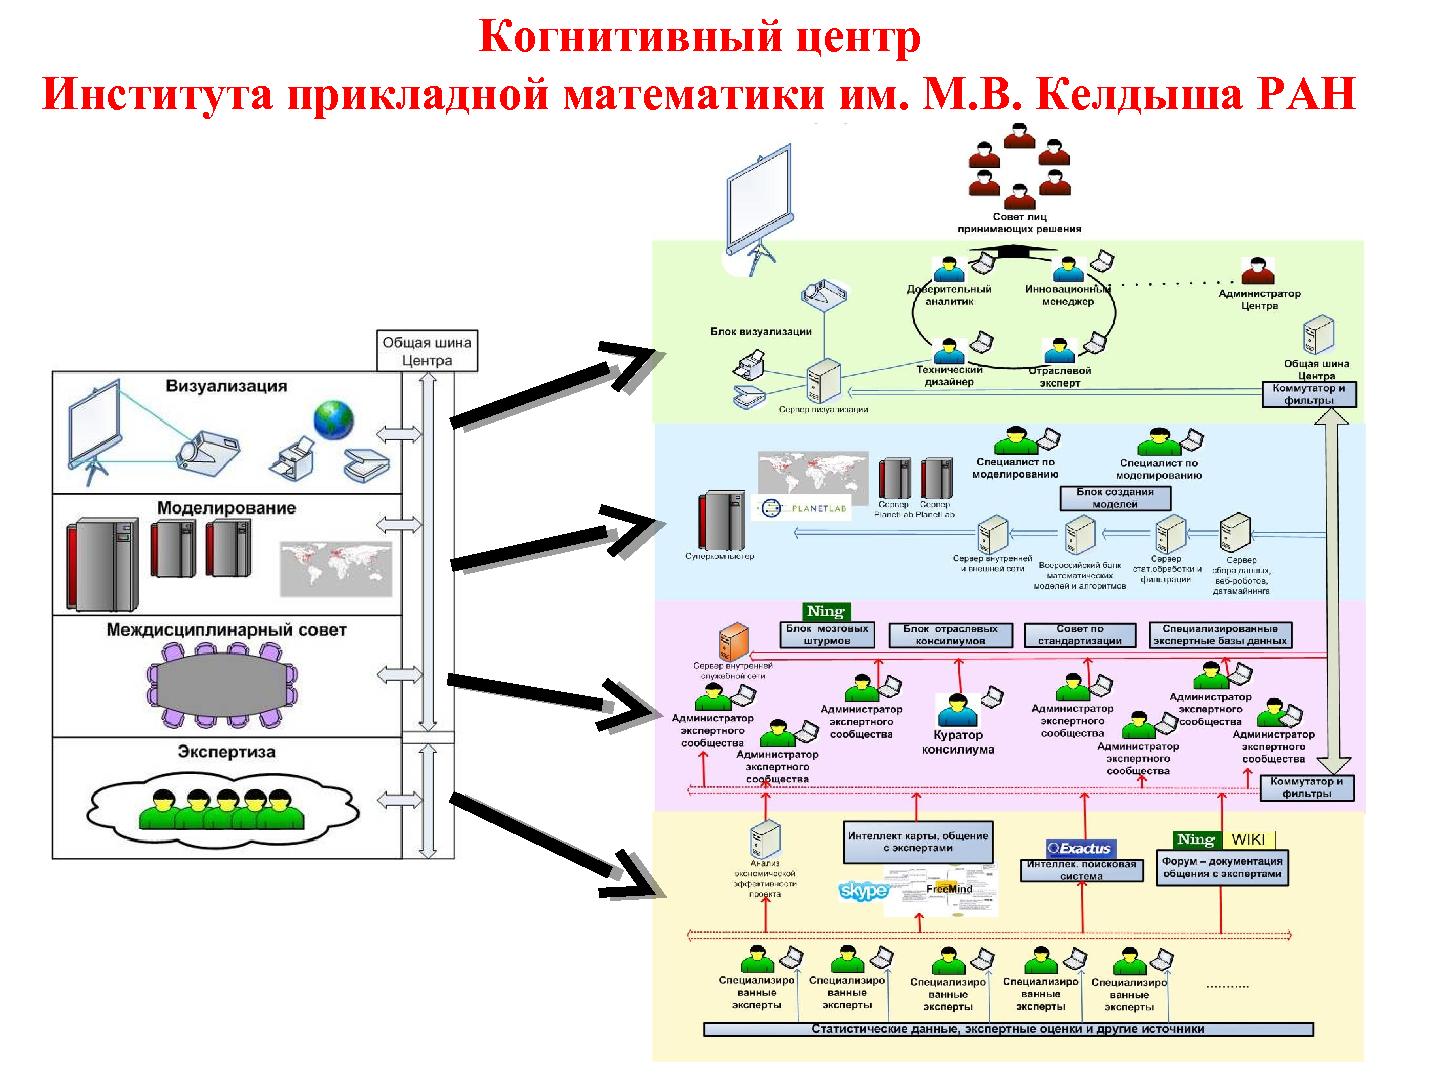 Файл:Организация виртуальных ситуационных центров и виртуальных когнитивных центров на базе СПО (ROSS-2013).pdf